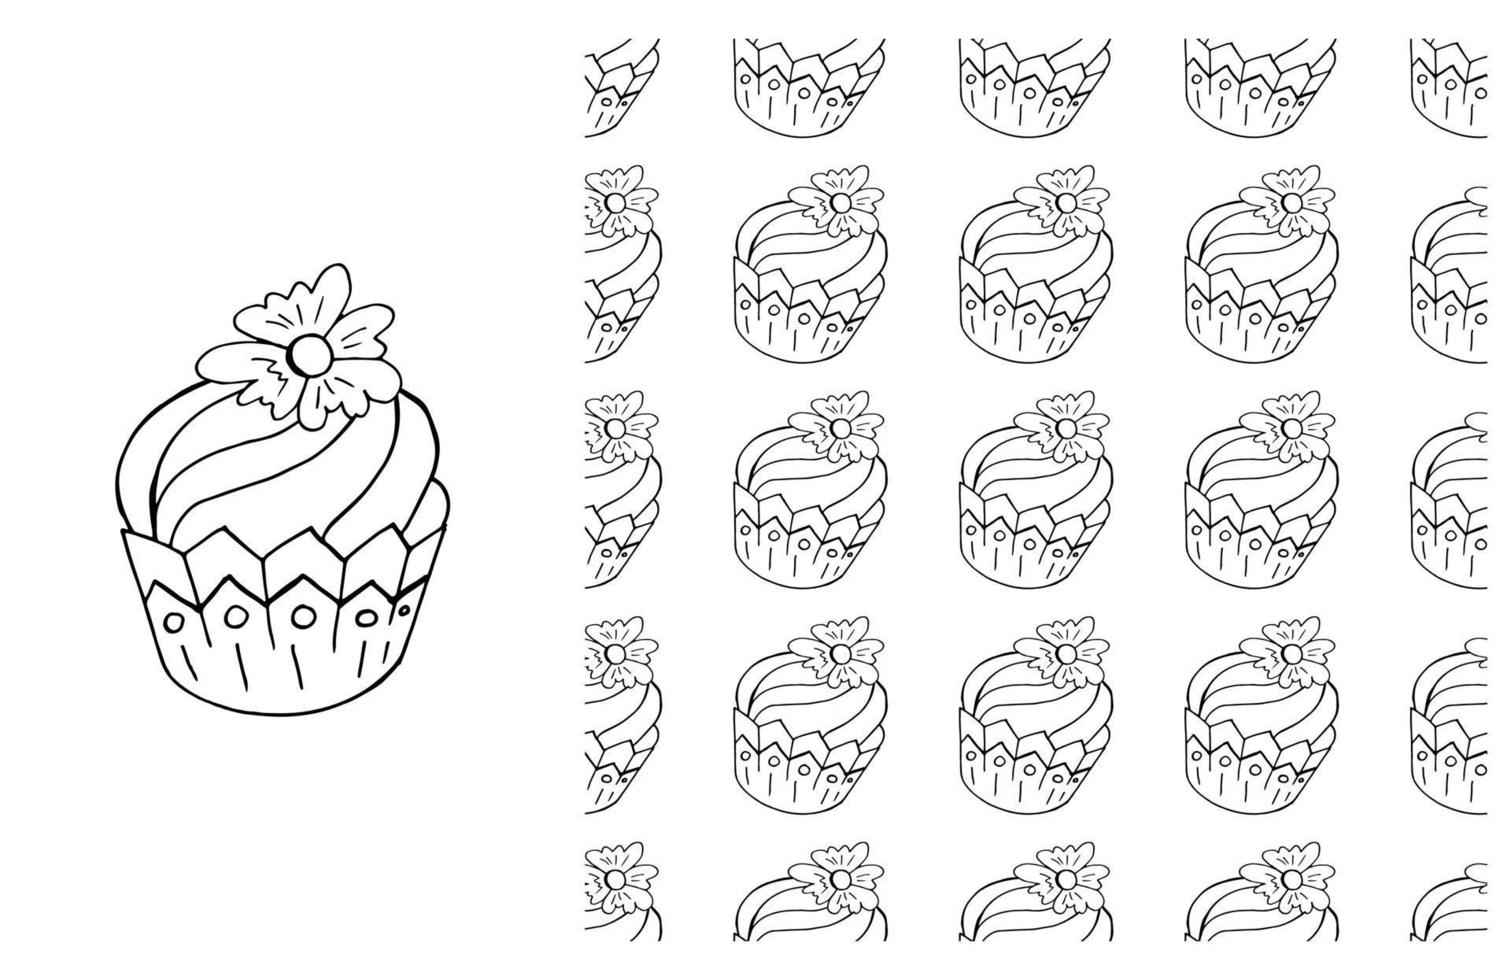 kleur cupcake. set van elementen en naadloos patroon vector